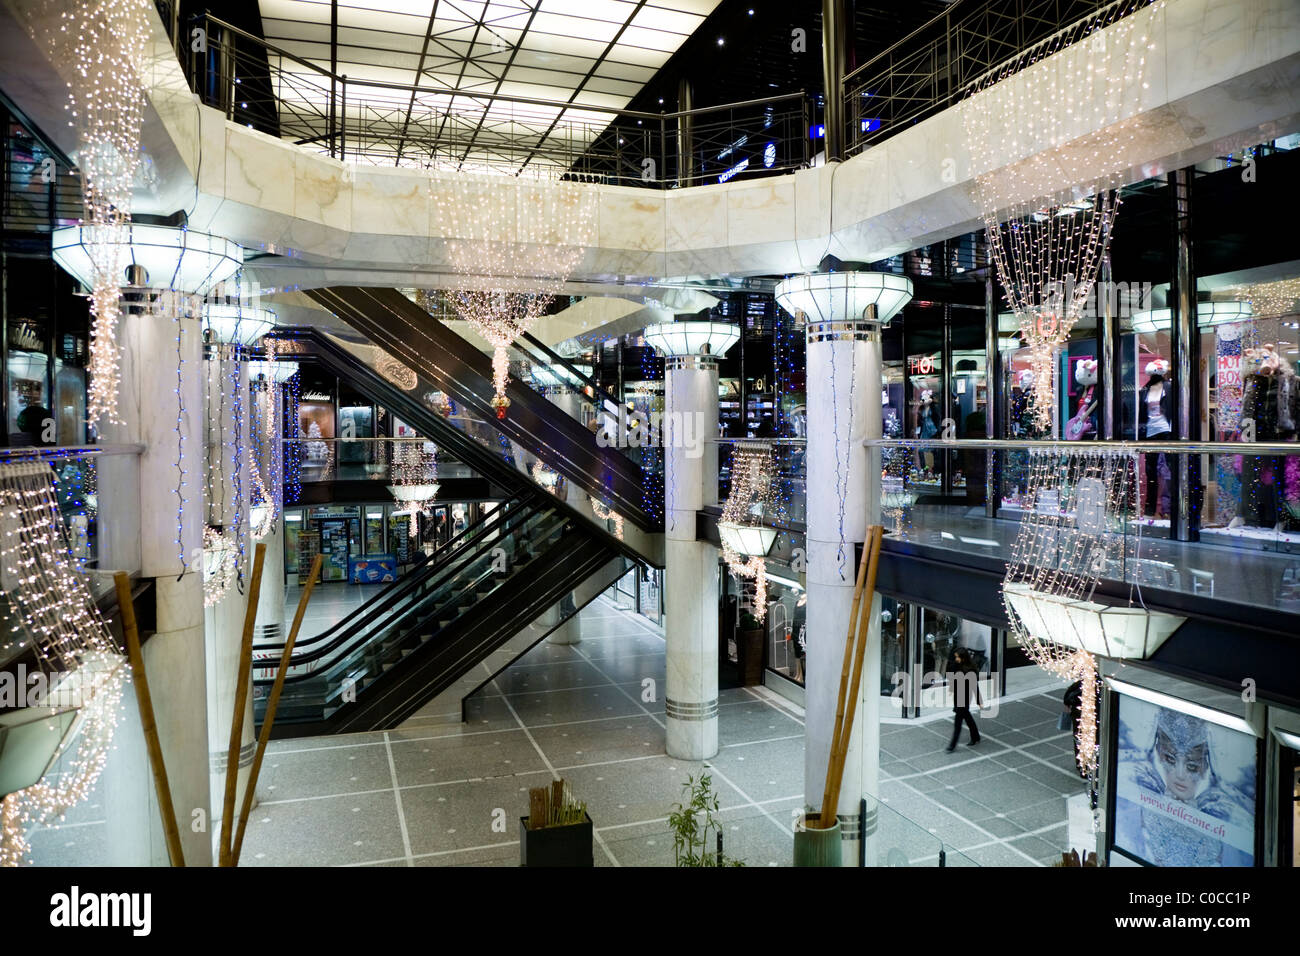 View all'interno della Confederazione Centro. Swiss shopping mall / arcade / negozi a Ginevra / Geneve, Svizzera. Foto Stock